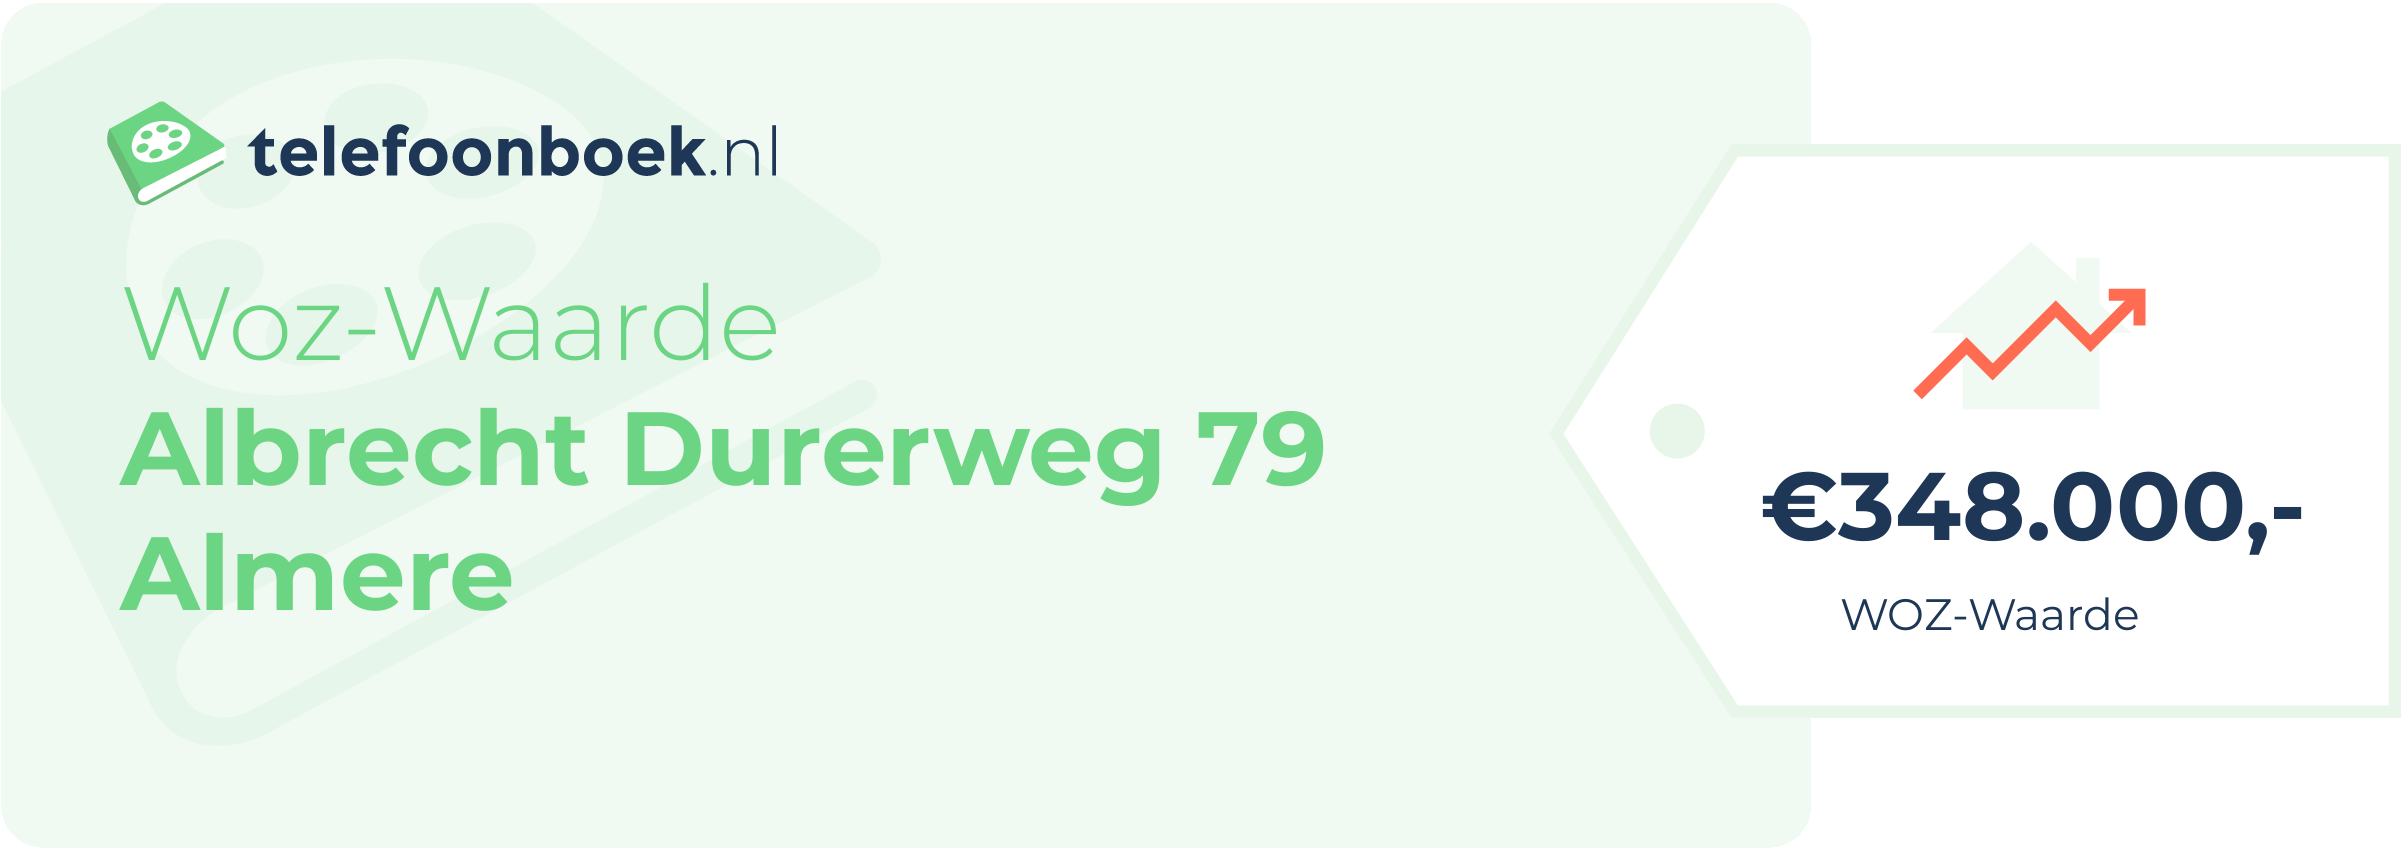 WOZ-waarde Albrecht Durerweg 79 Almere